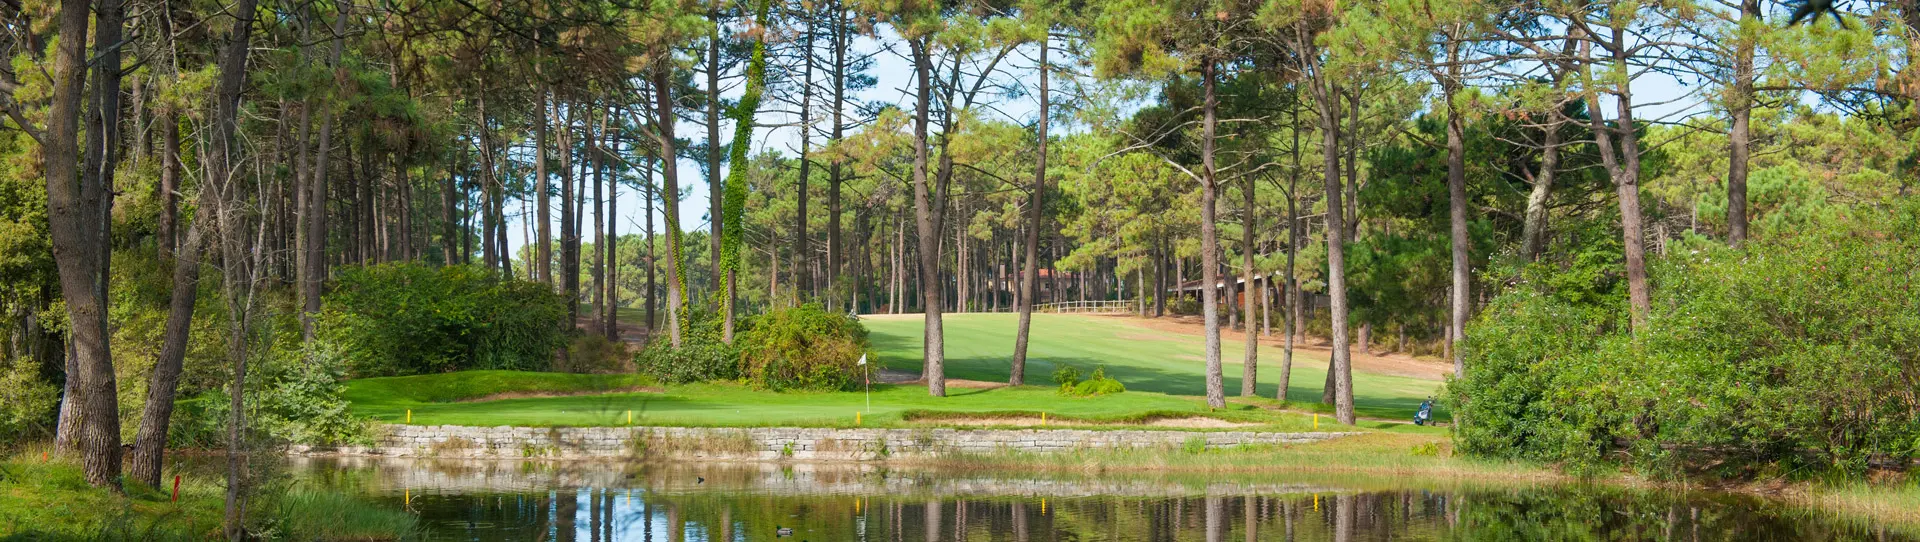 Portugal golf courses - Aroeira Pines Classic Golf Course (ex Aroeira I) - Photo 1